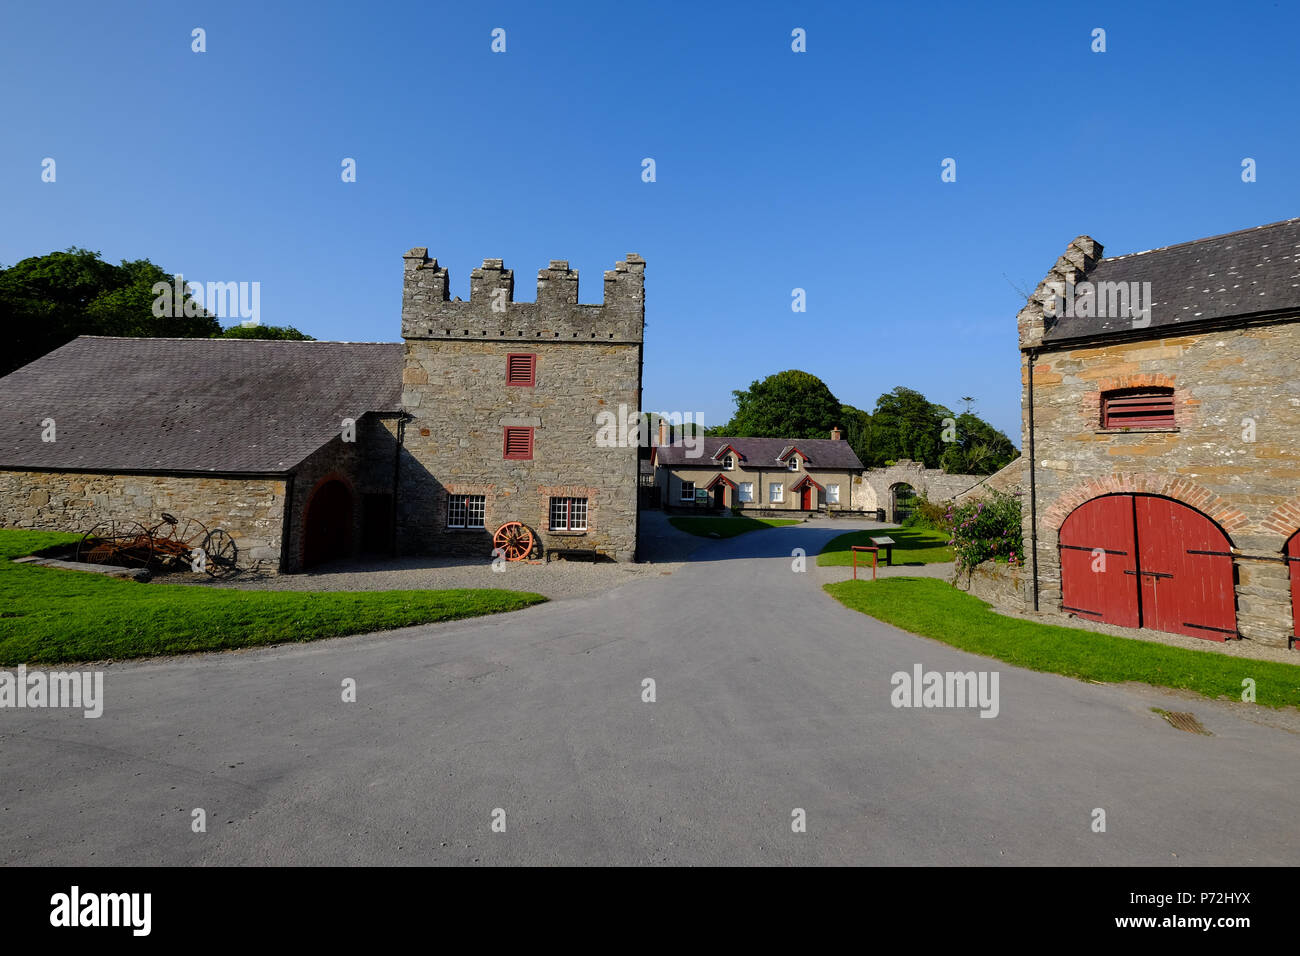 Castle Ward, Winterfell gioco di troni posizione, nei pressi del villaggio di Strangford, County Down, Ulster (Irlanda del Nord, Regno Unito, Europa Foto Stock